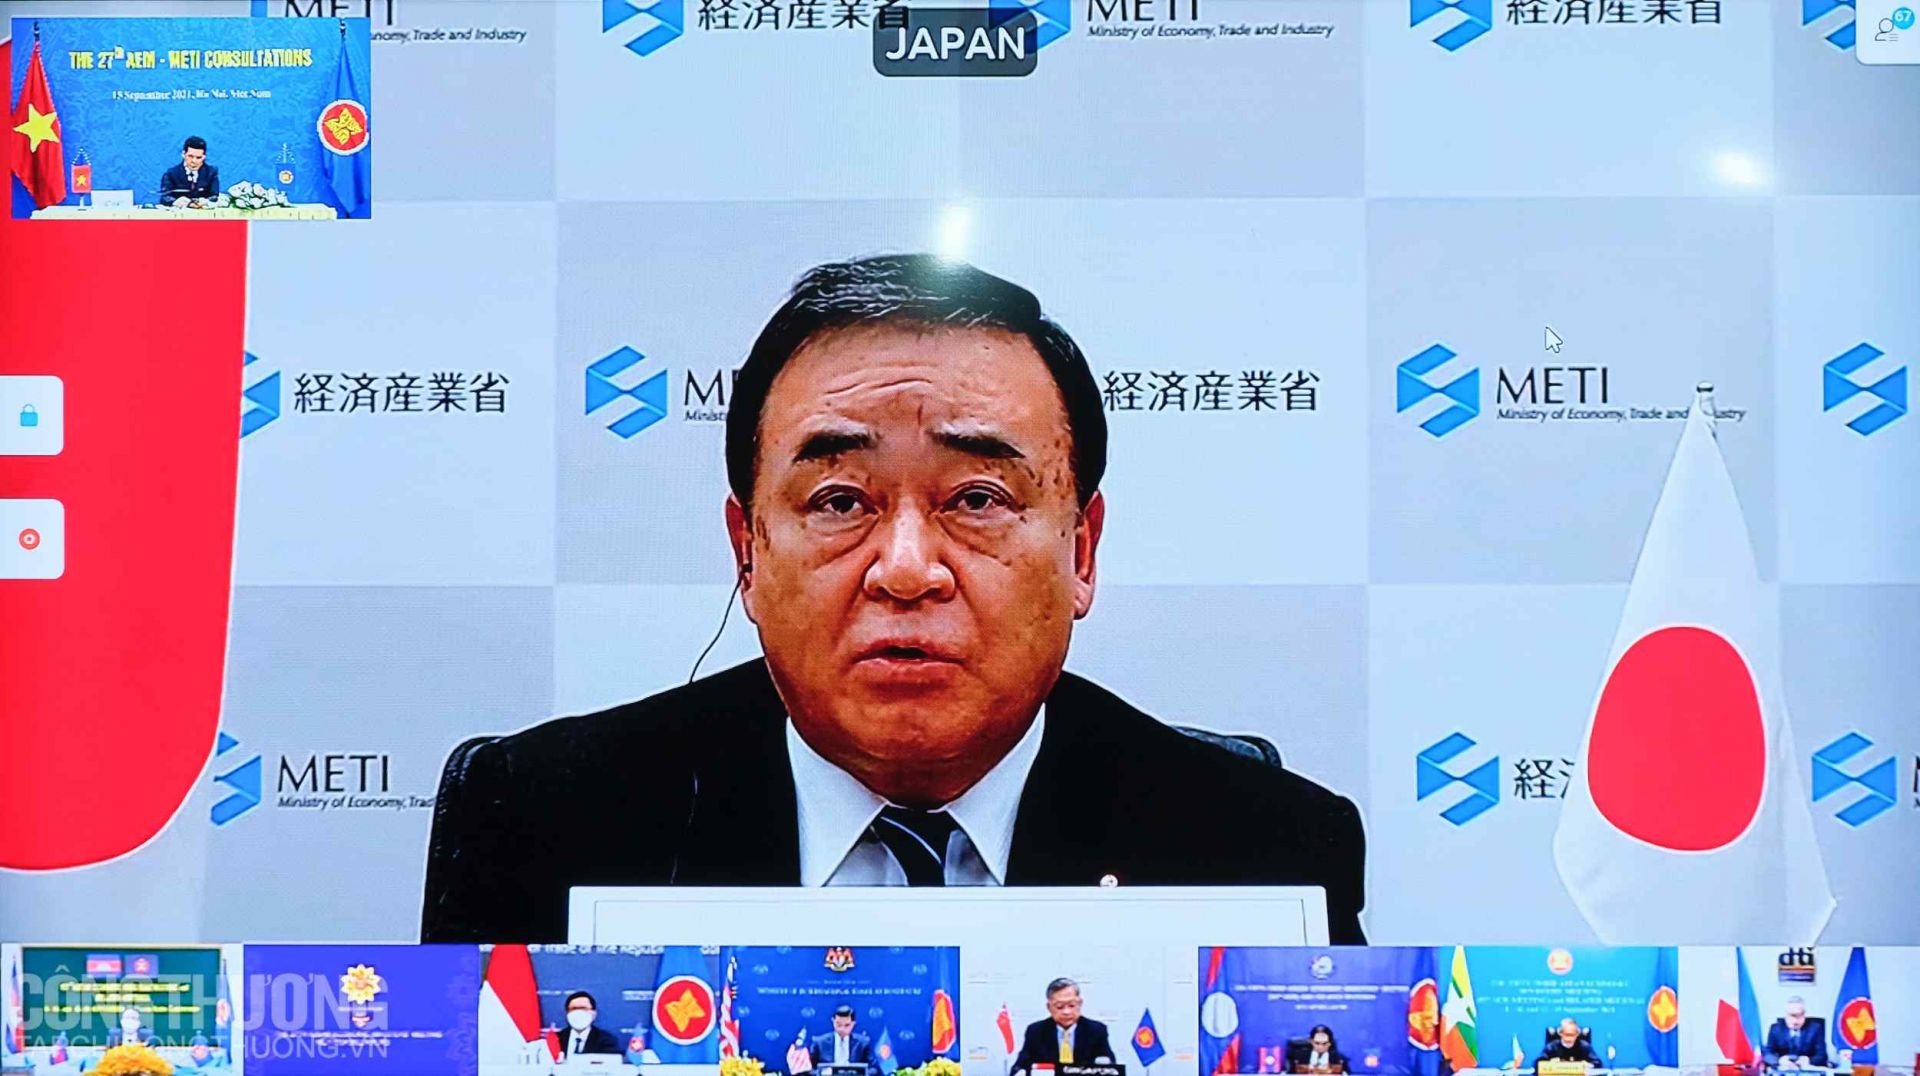 Bộ trưởng Kinh tế, Thương mại và Công nghiệp Nhật Bản Kajiyama Hiroshi